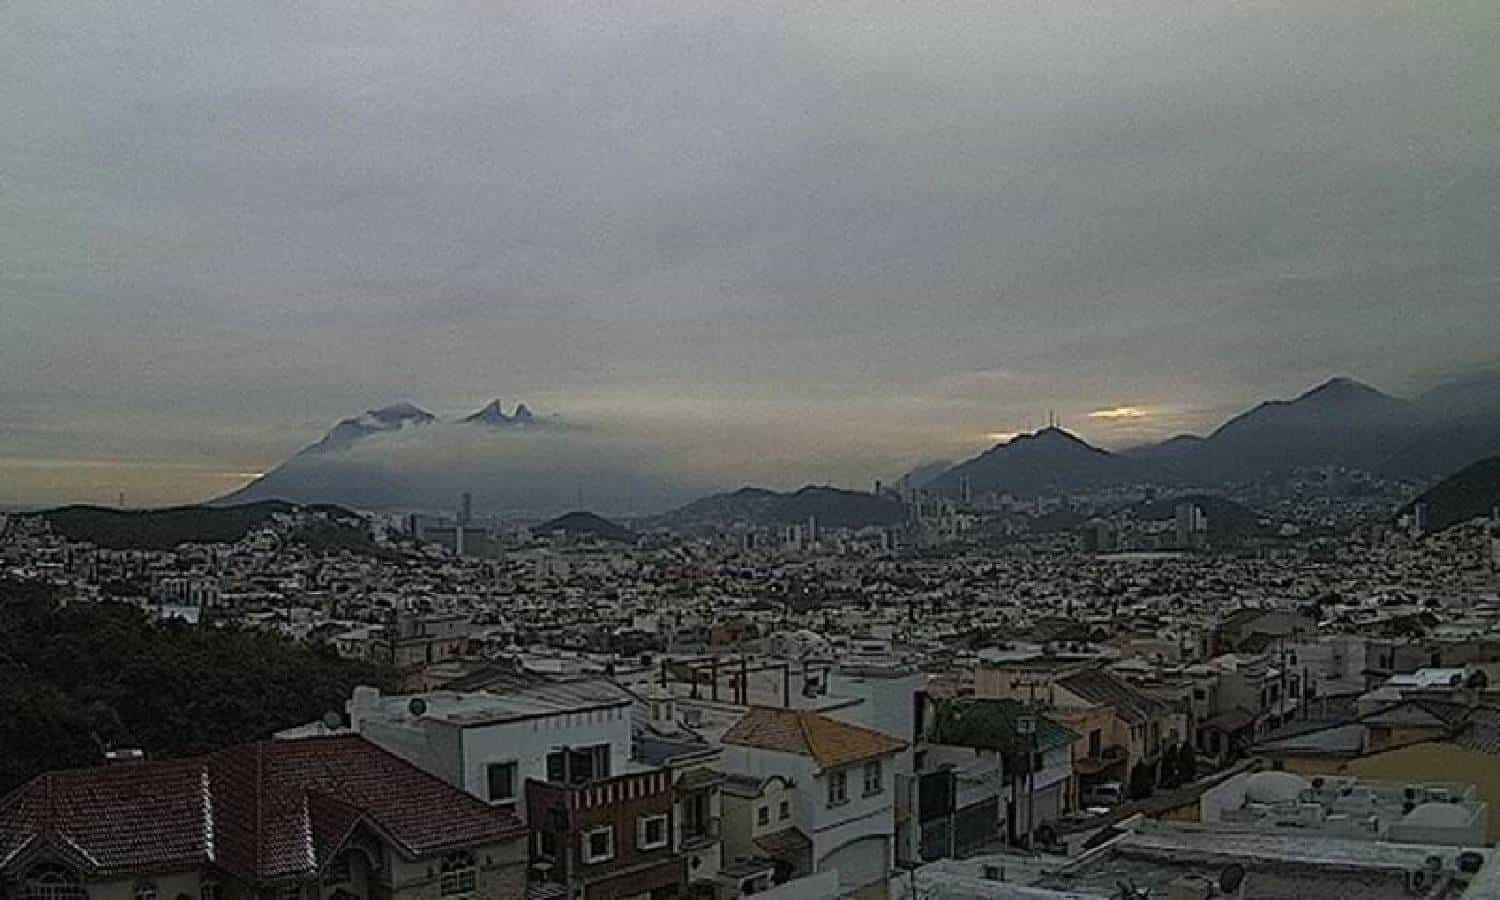 Se presenta contaminación en Monterrey